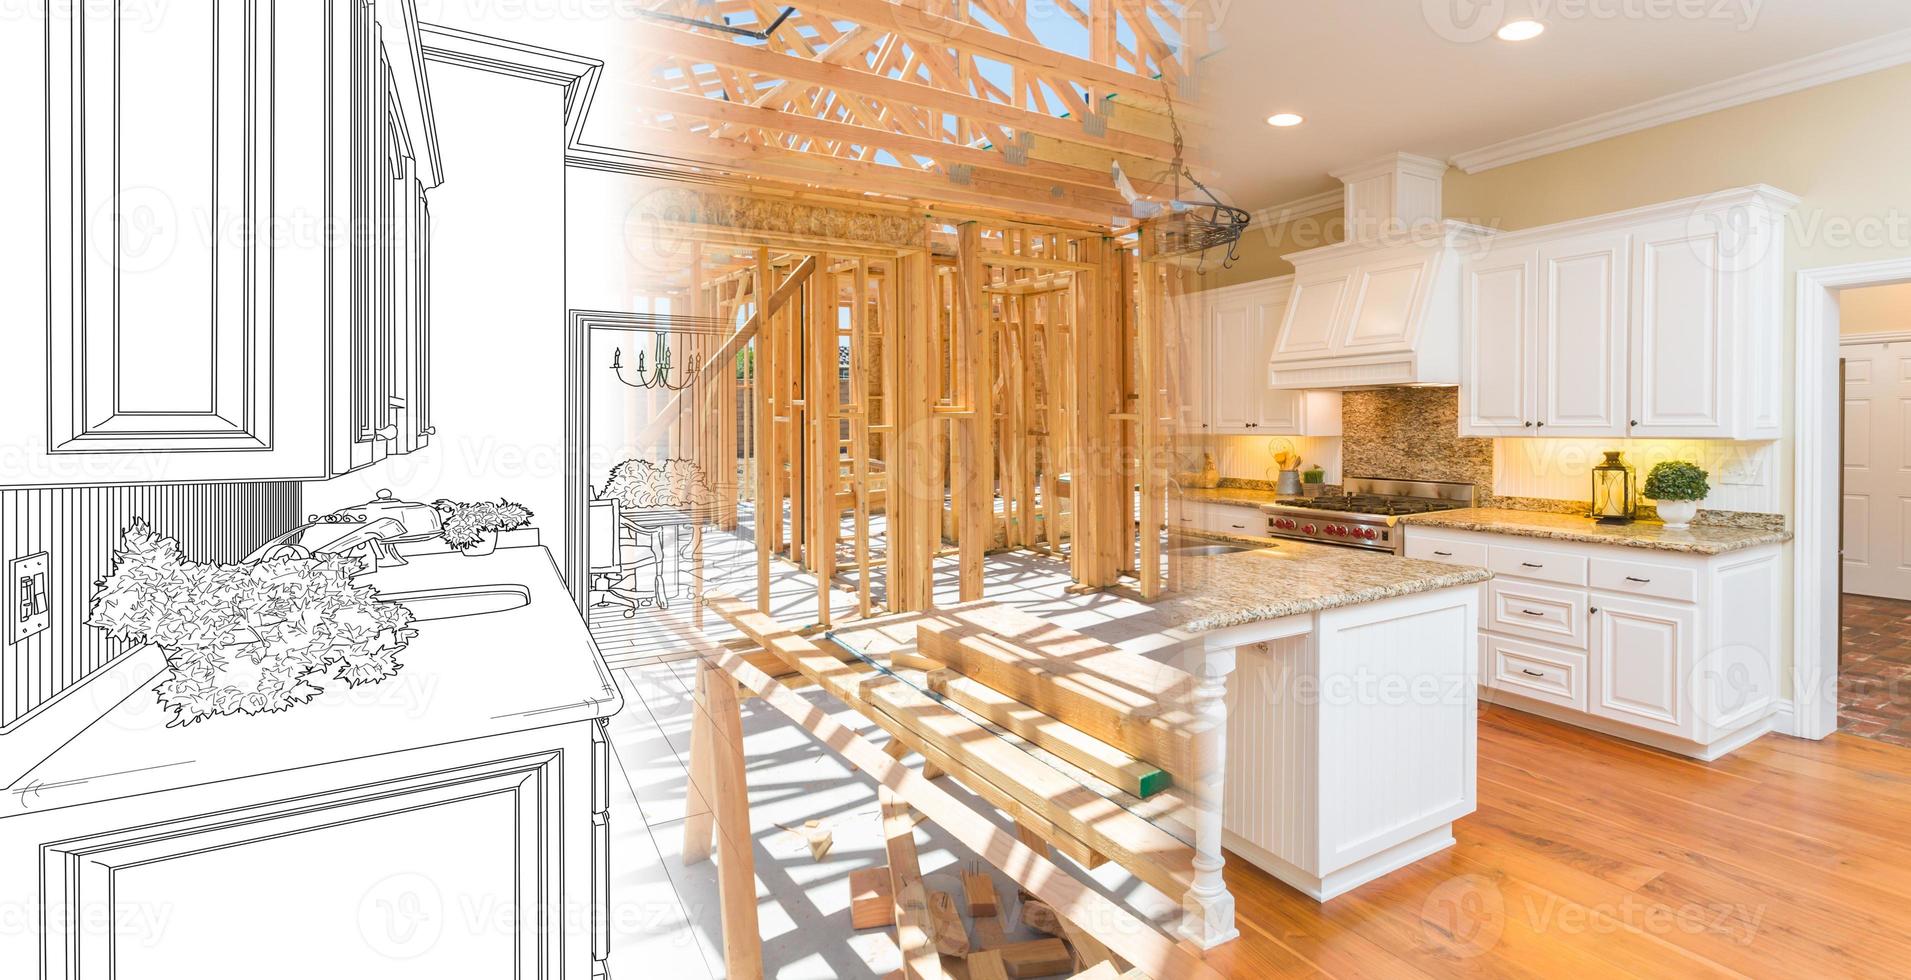 keuken blauwdruk tekening afstuderen in huis bouw framing vervolgens in afgewerkt bouwen foto